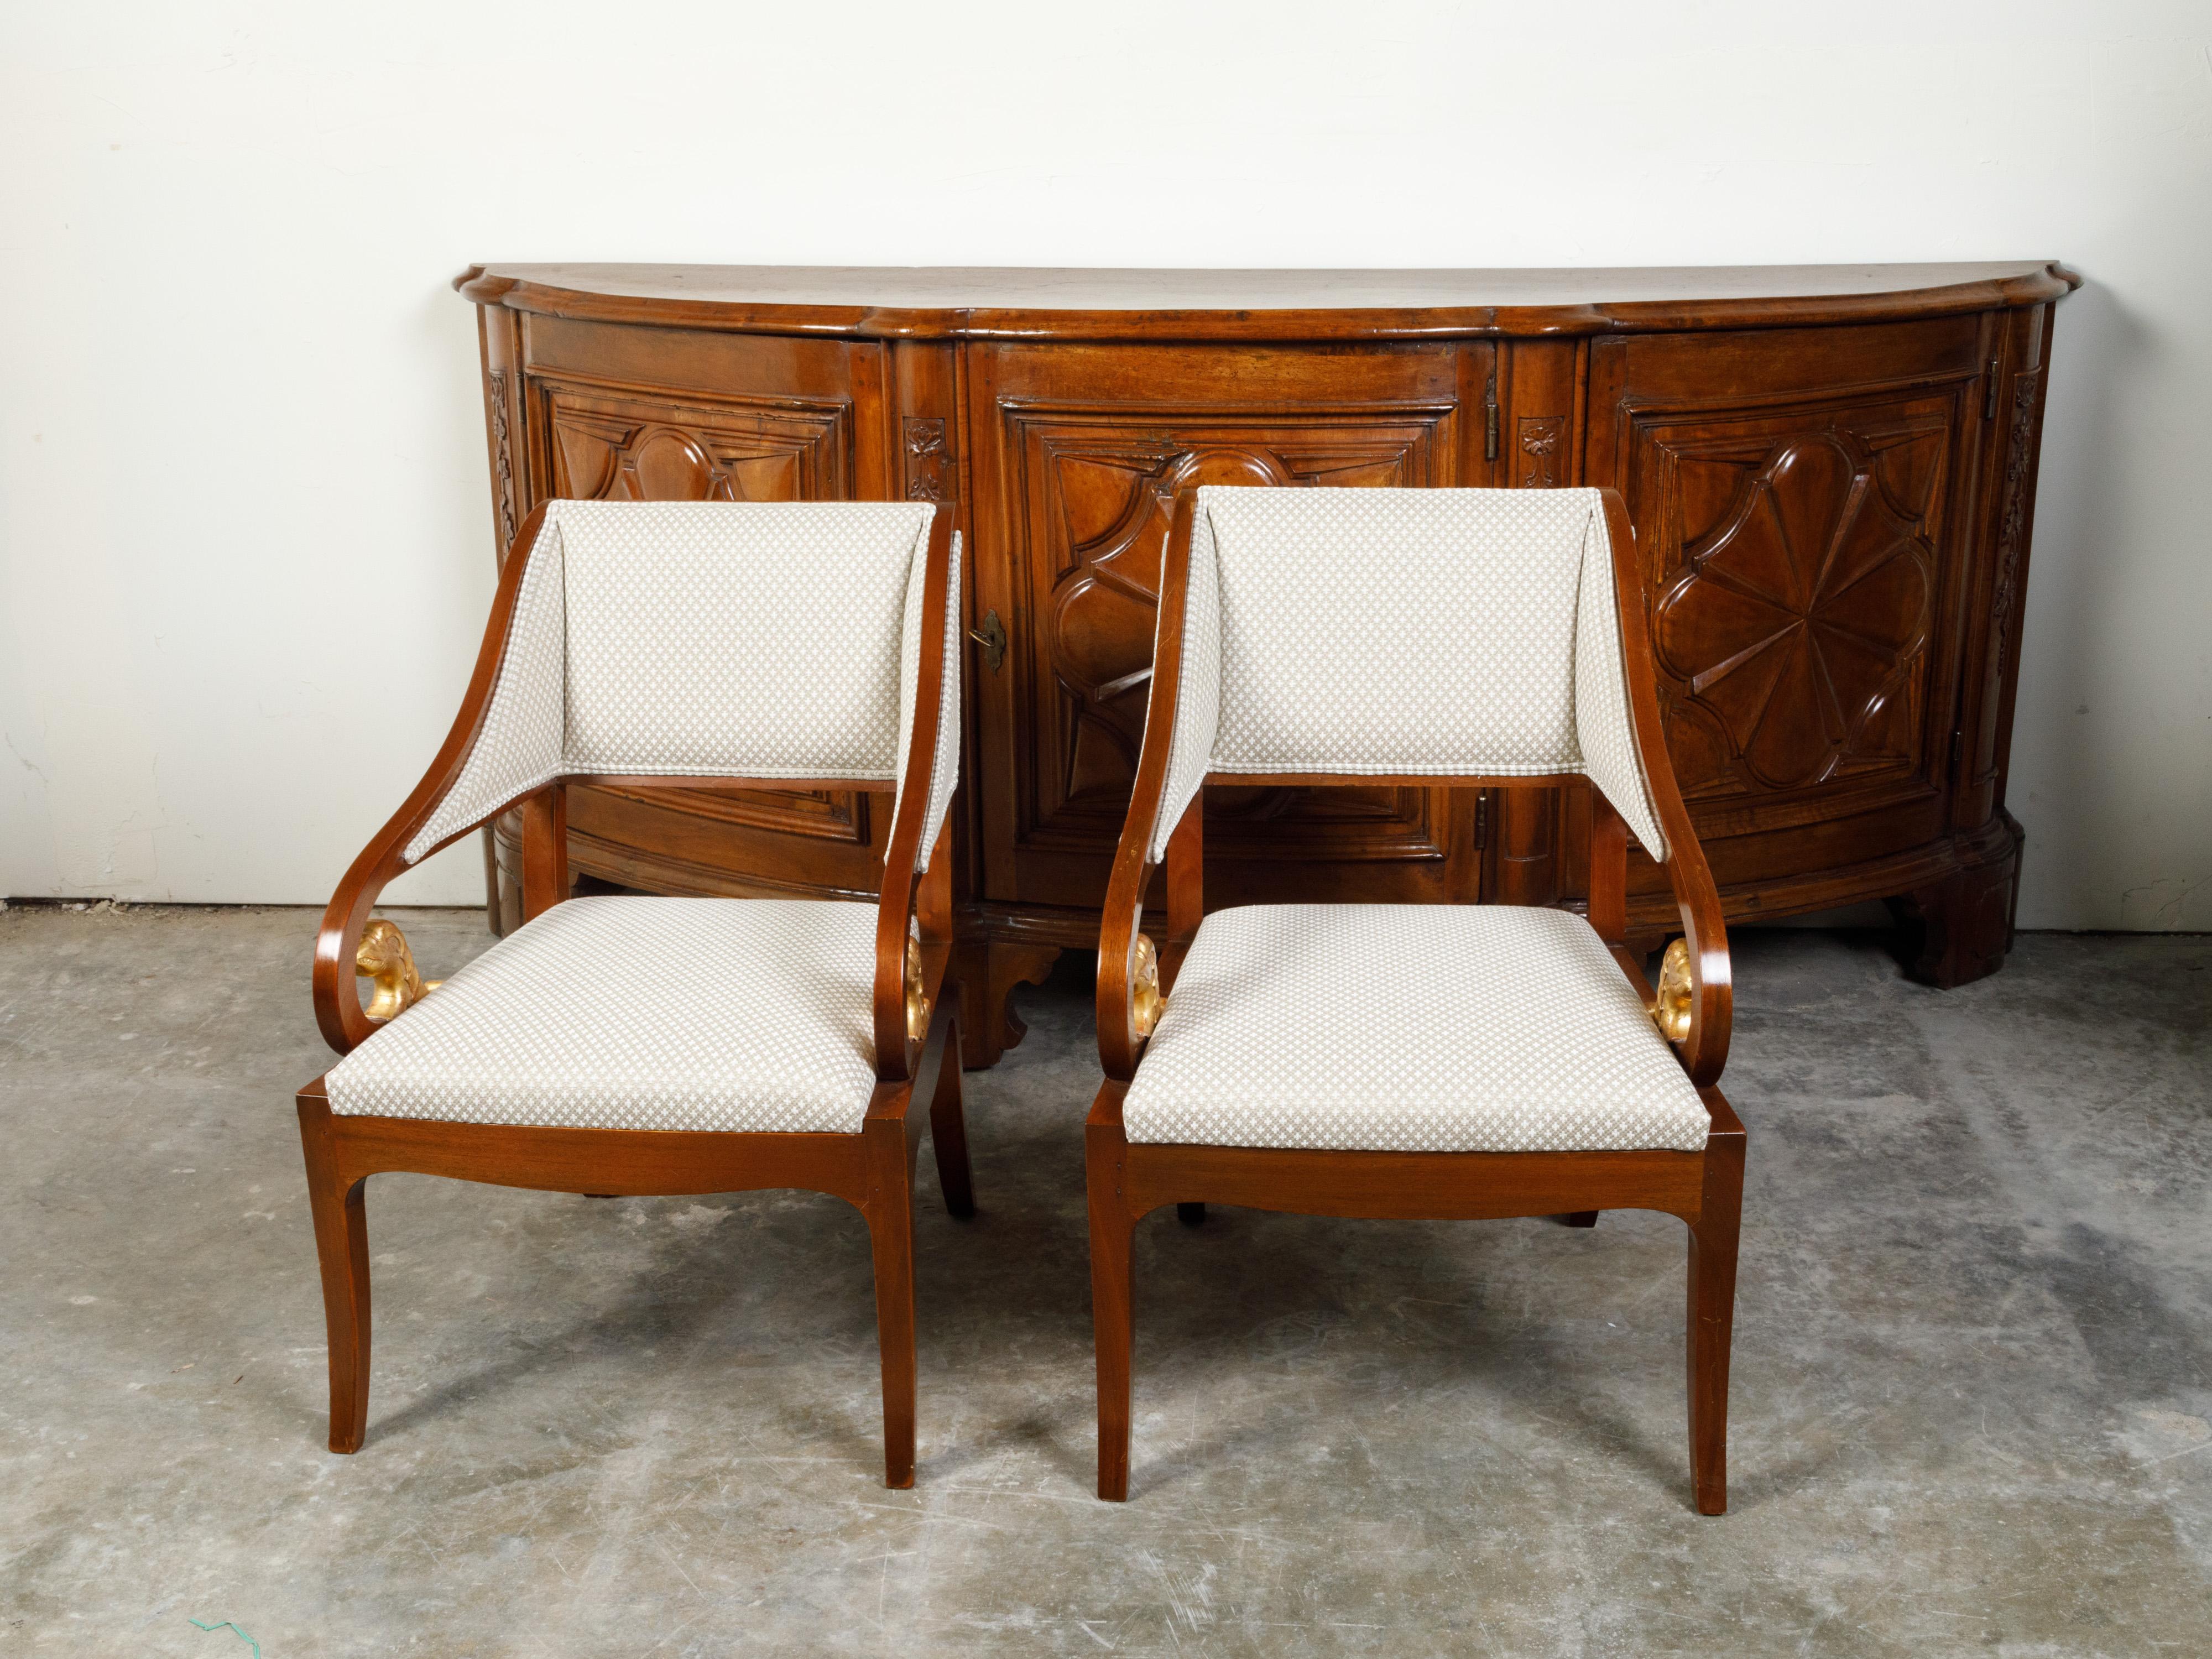 Ein Paar französischer Nussbaumsessel aus dem 19. Jahrhundert, mit Schnitzereien aus Goldholz und Polsterung aus Vierblättrigem. Dieses Paar Sessel aus Nussbaumholz wurde im 19. Jahrhundert in Frankreich hergestellt und zeichnet sich durch eine nach